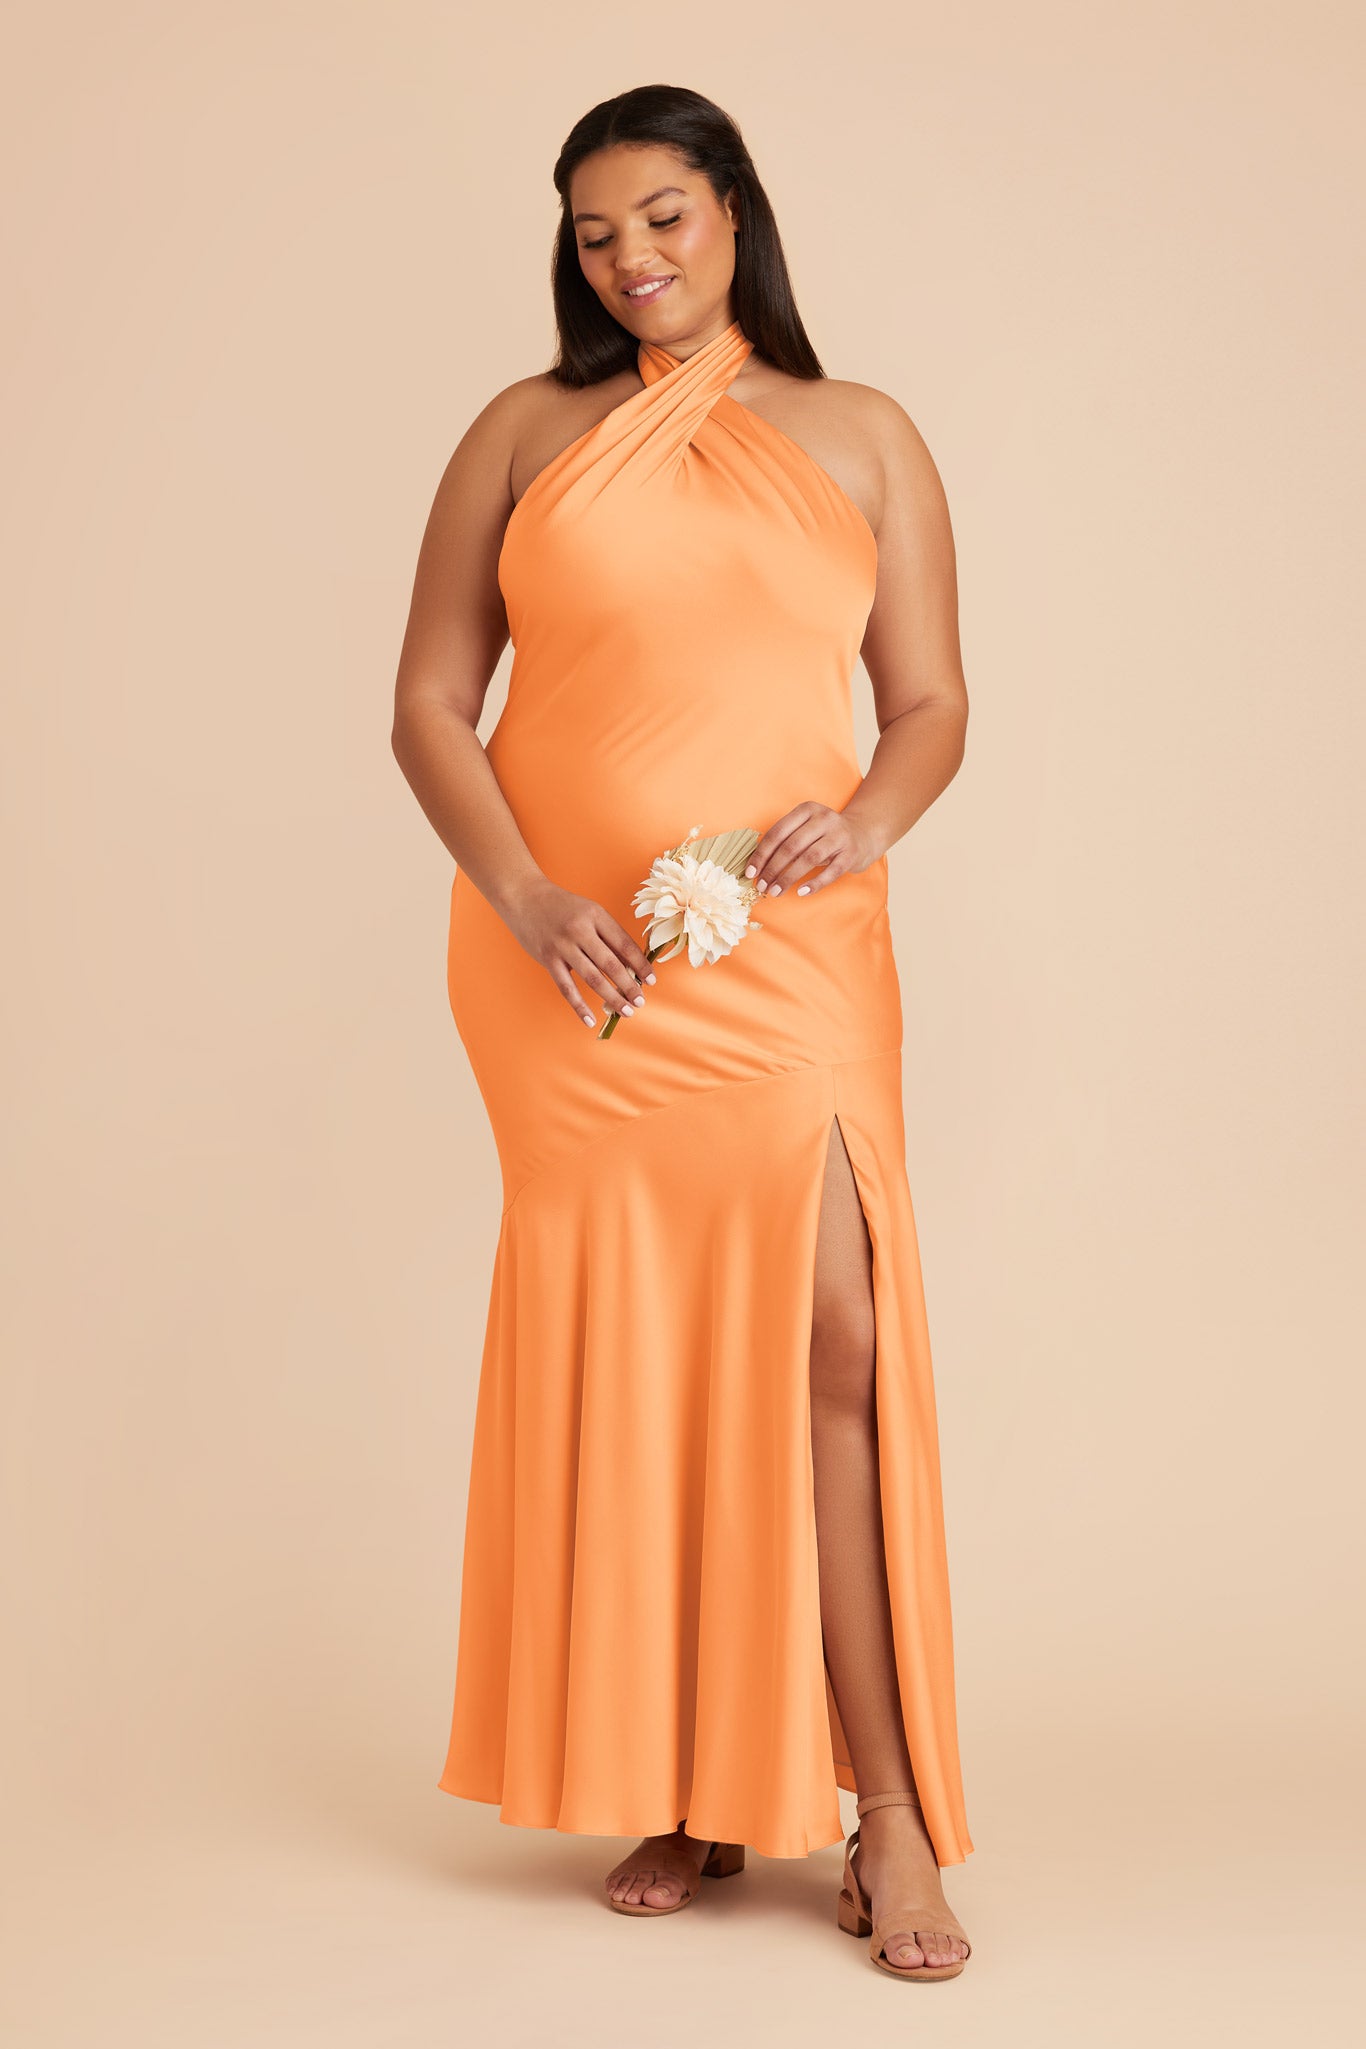 Apricot Stephanie Matte Satin Dress by Birdy Grey